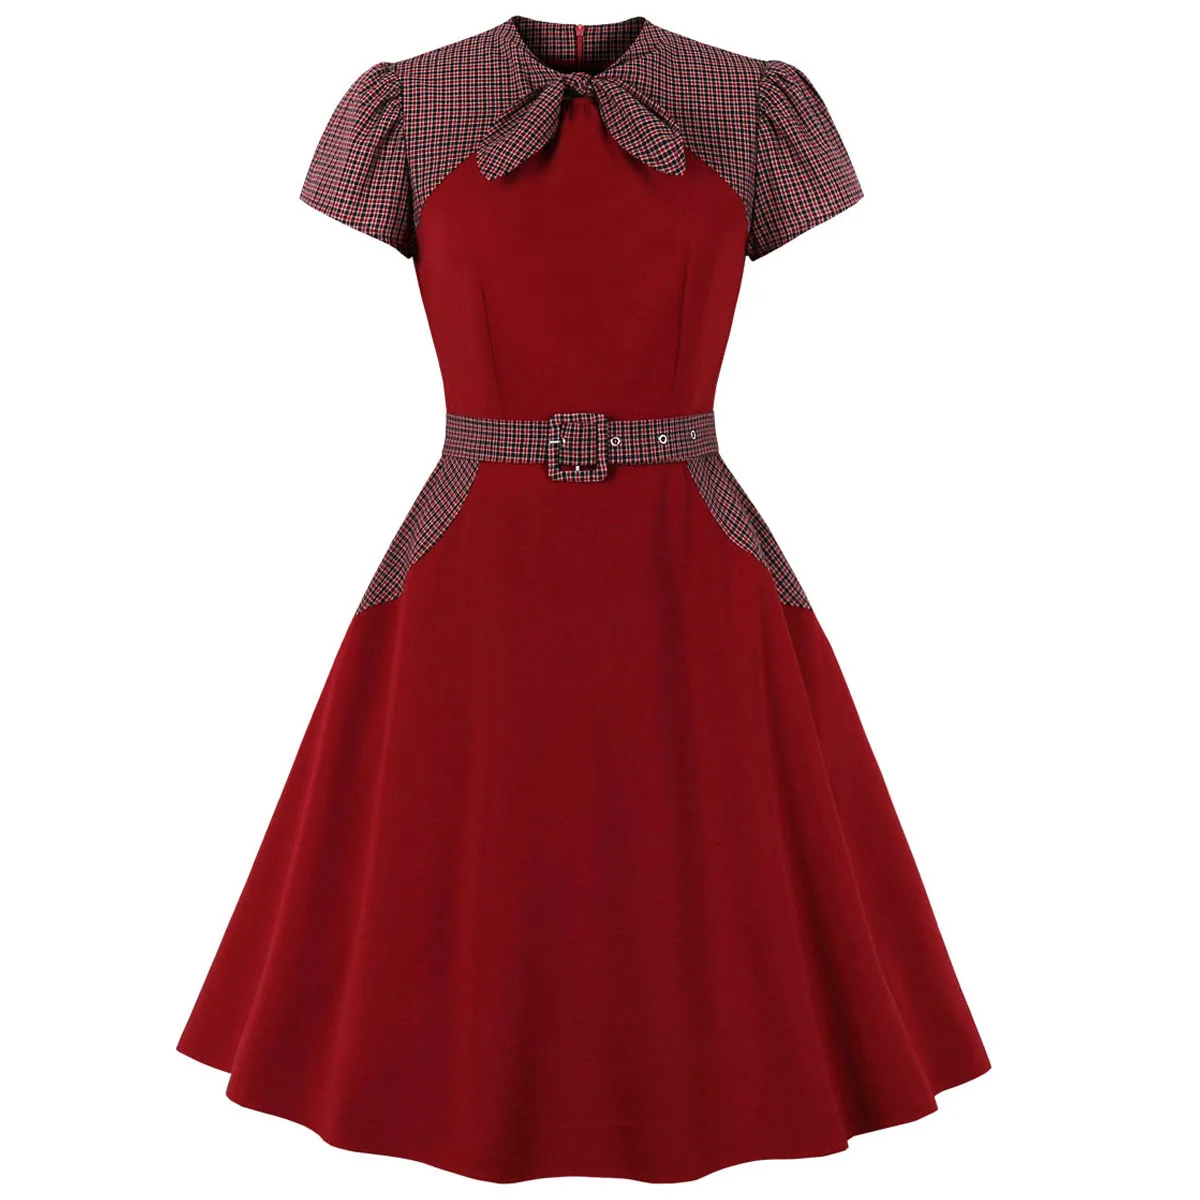 Ретро рокабилли клетчатое платье-туника с поясом винтажное платье